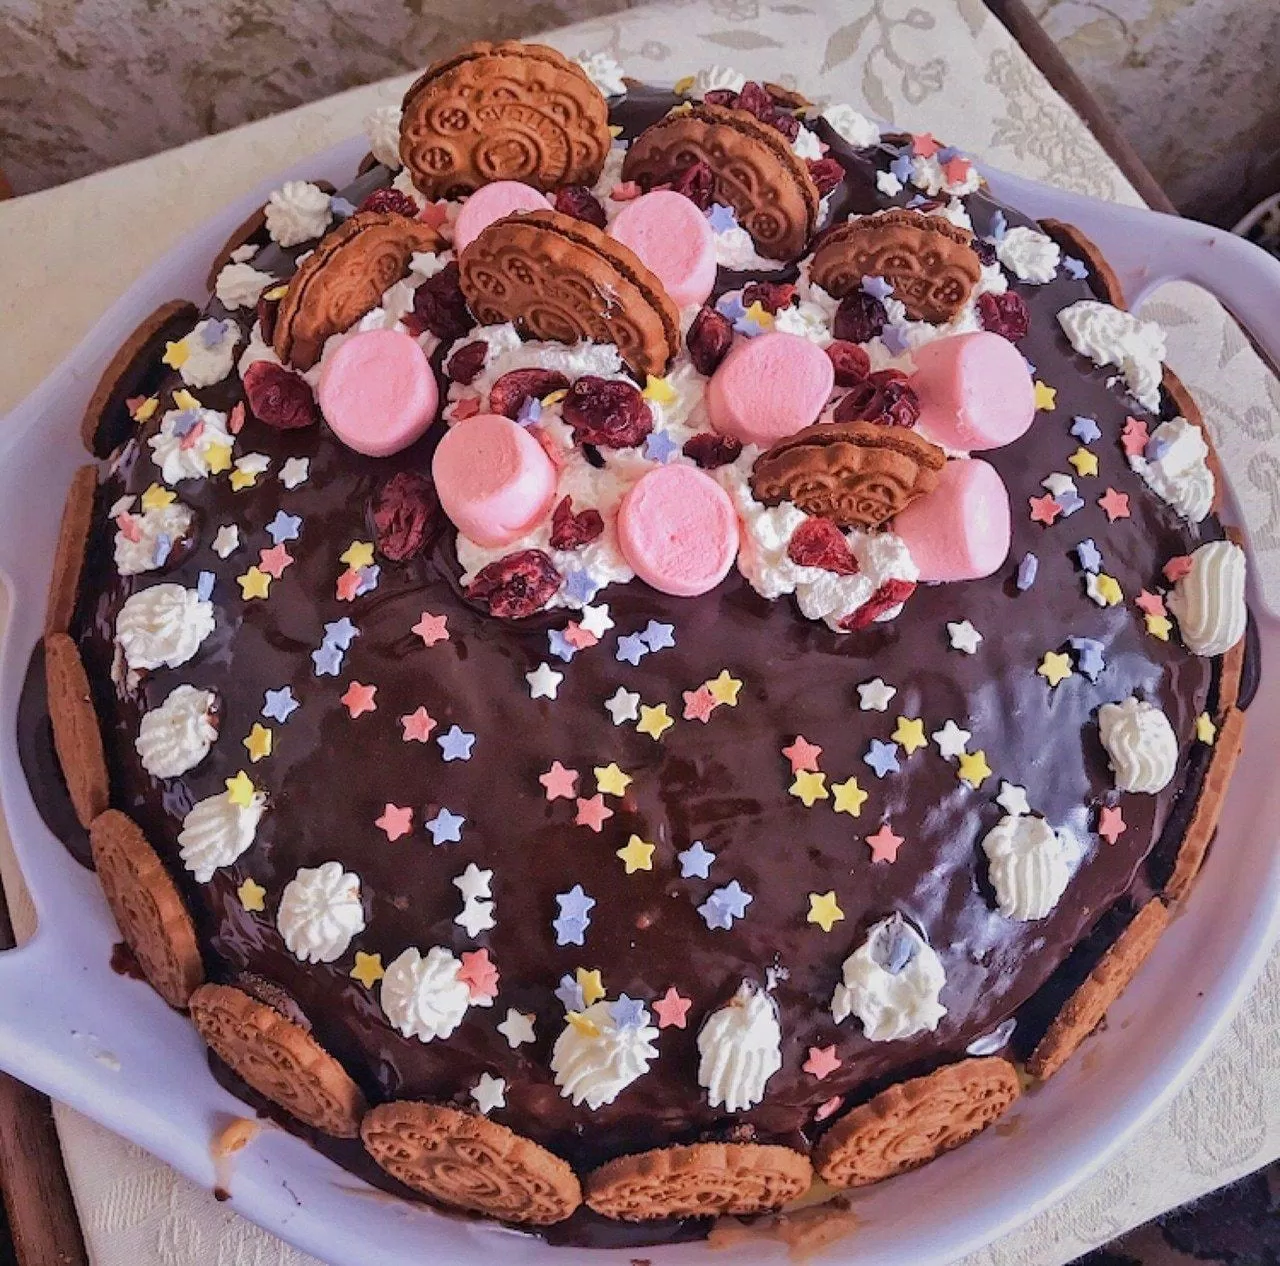 Bánh sinh nhật chocolate với cả bầu trời sao (Ảnh: internet)